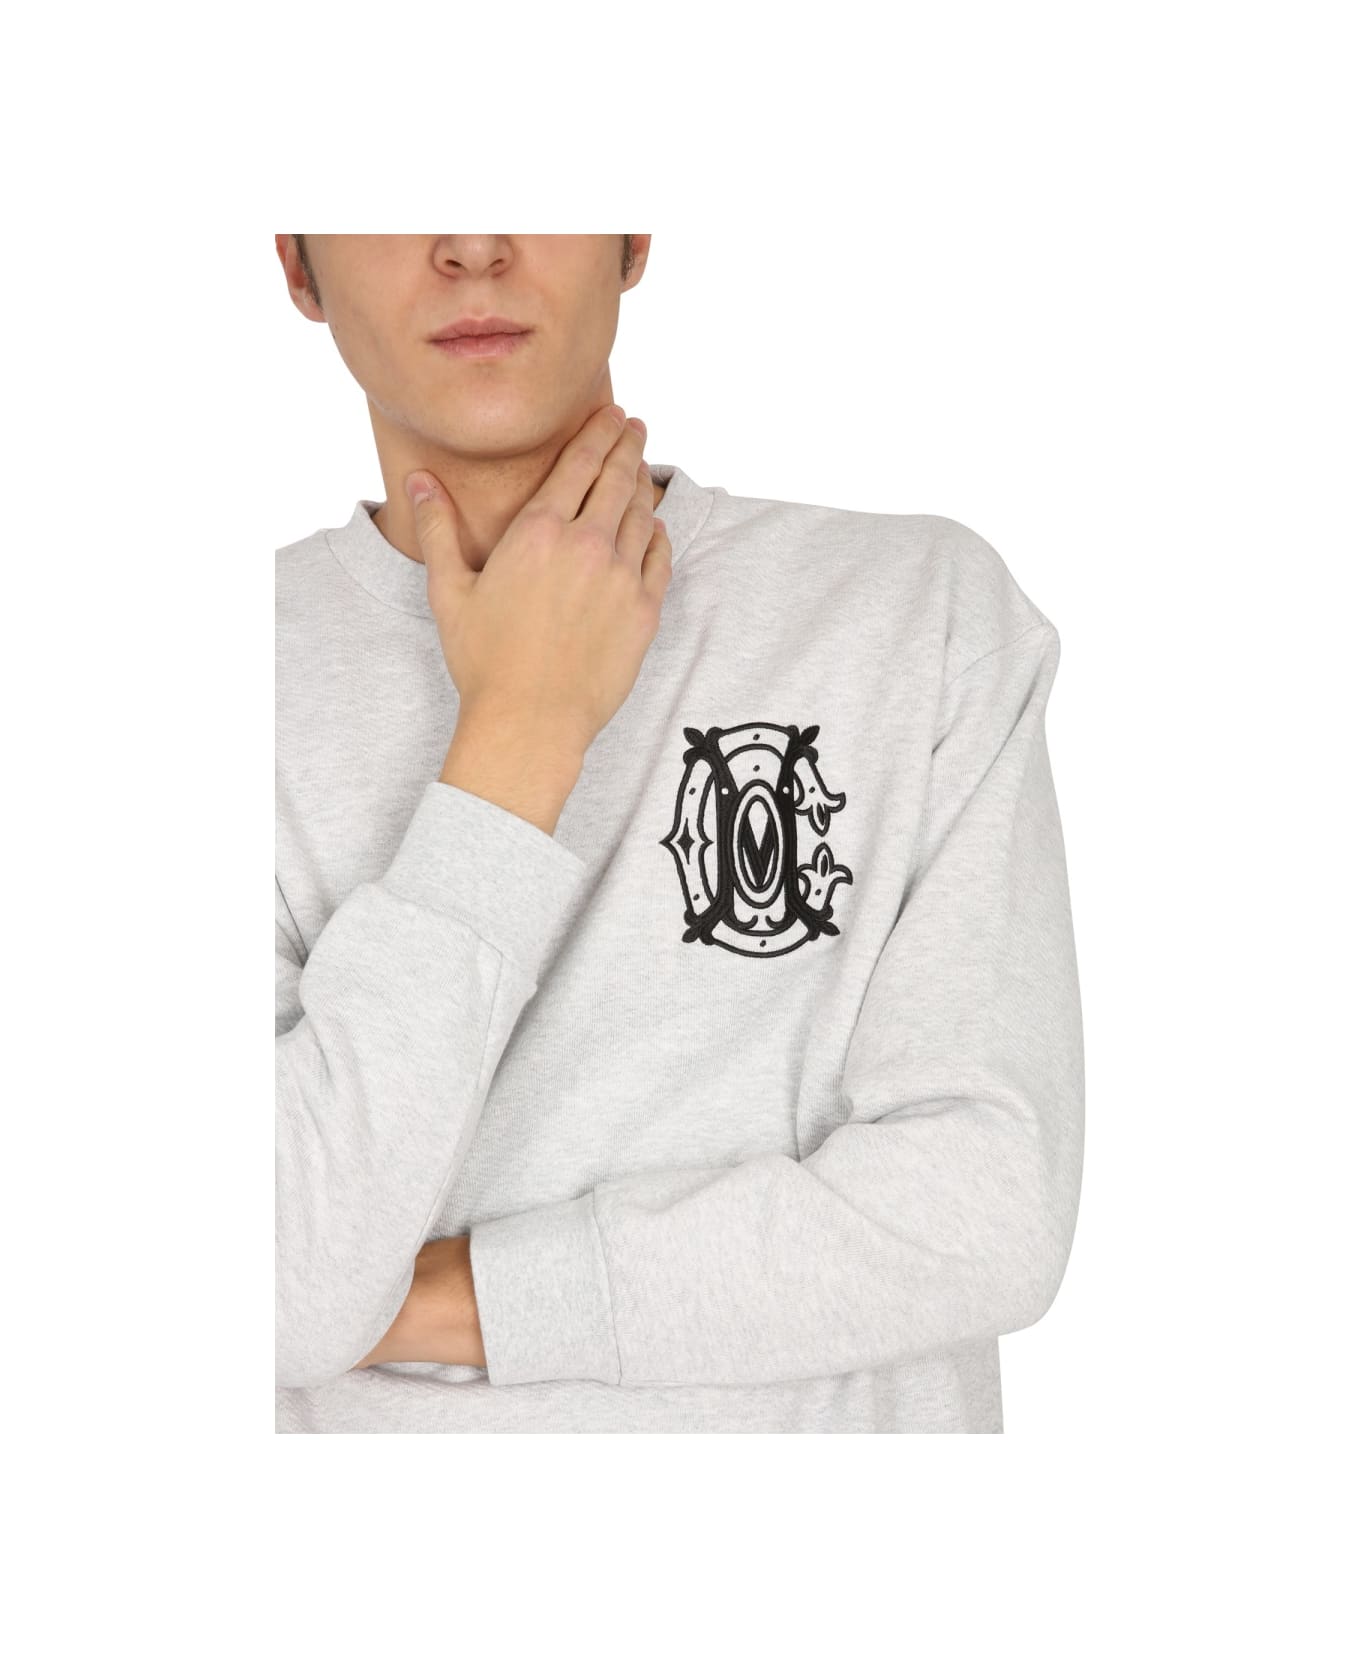 Marcelo Burlon "monogram" Sweatshirt - WHITE